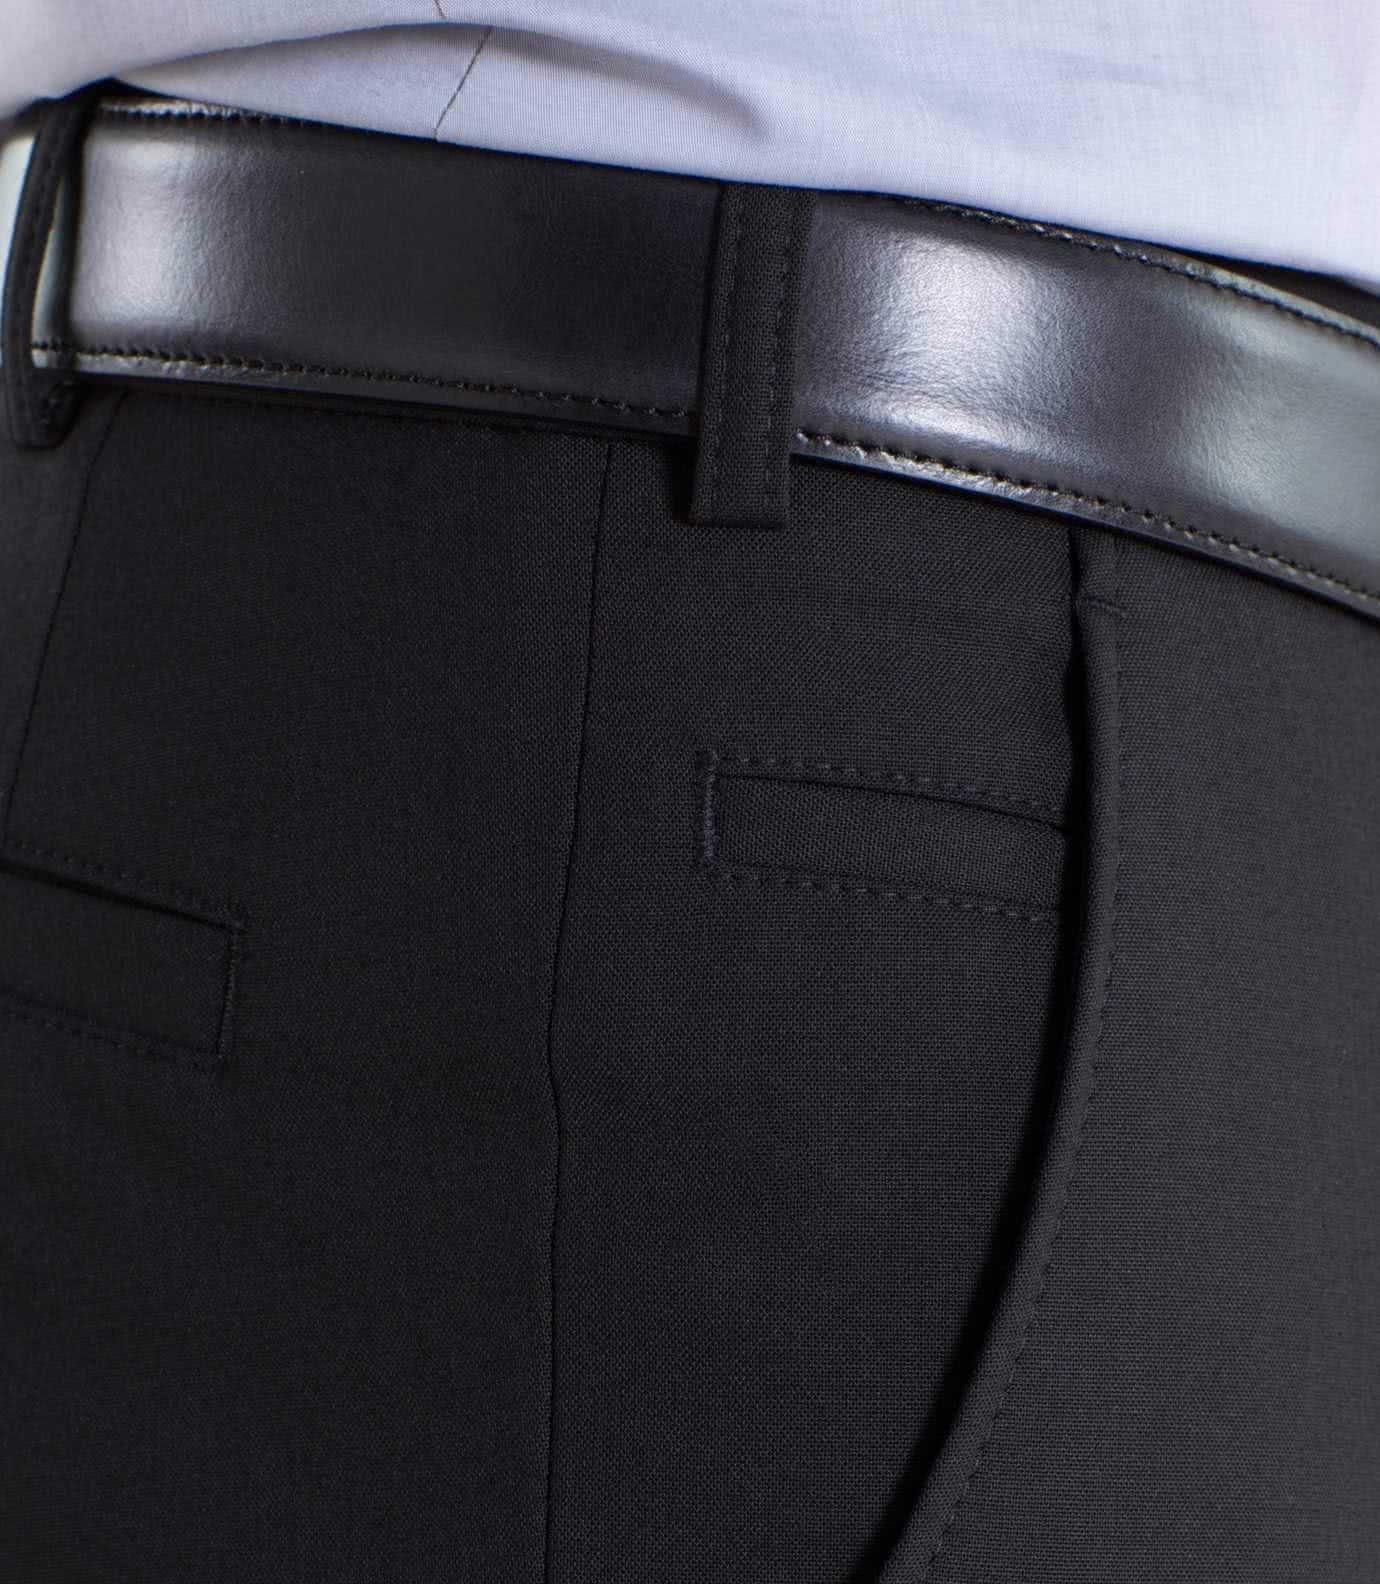 MEYER Anzughose schwarz (1-tlg., 09 Angabe) keine fit Modern